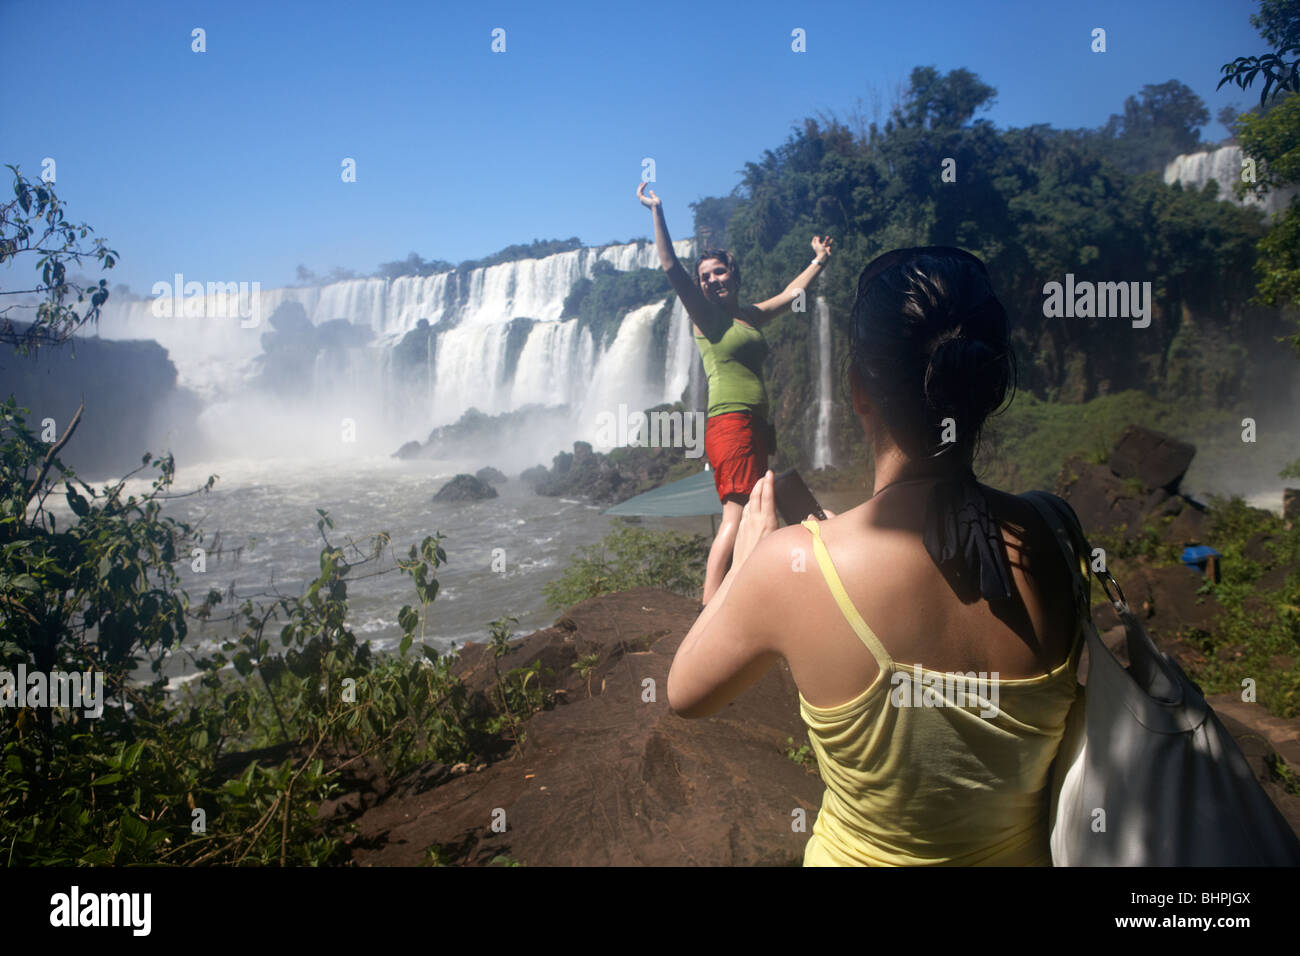 Les femmes qui humide prendre des photos lors d'Iguazu national park, république de l'Argentine, l'Amérique du Sud Banque D'Images